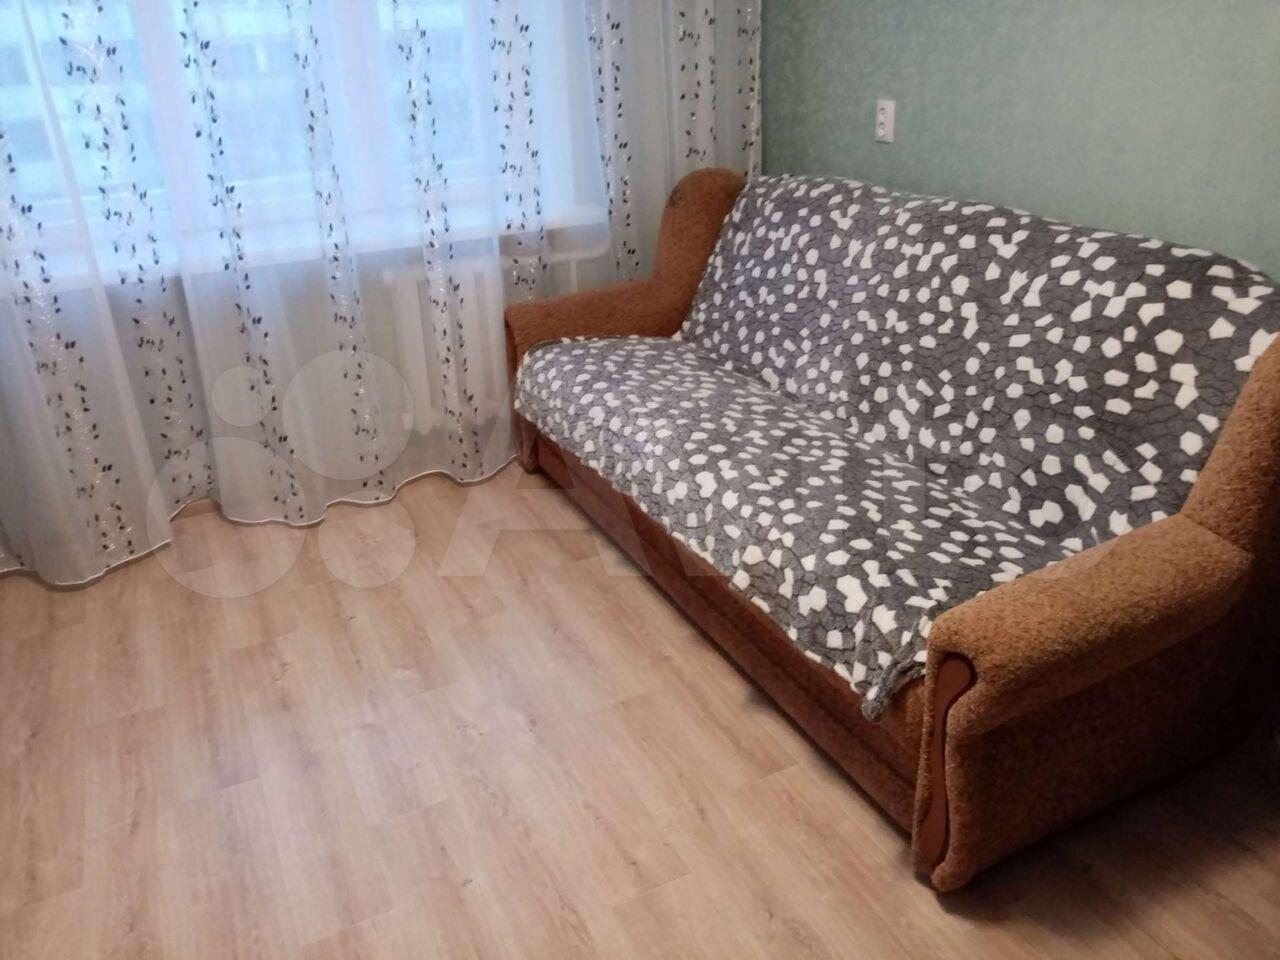 Сколько стоит снять квартиру на автозаводе в Нижнем Новгороде. Комнаты в общежитии нижнего новгорода хозяин